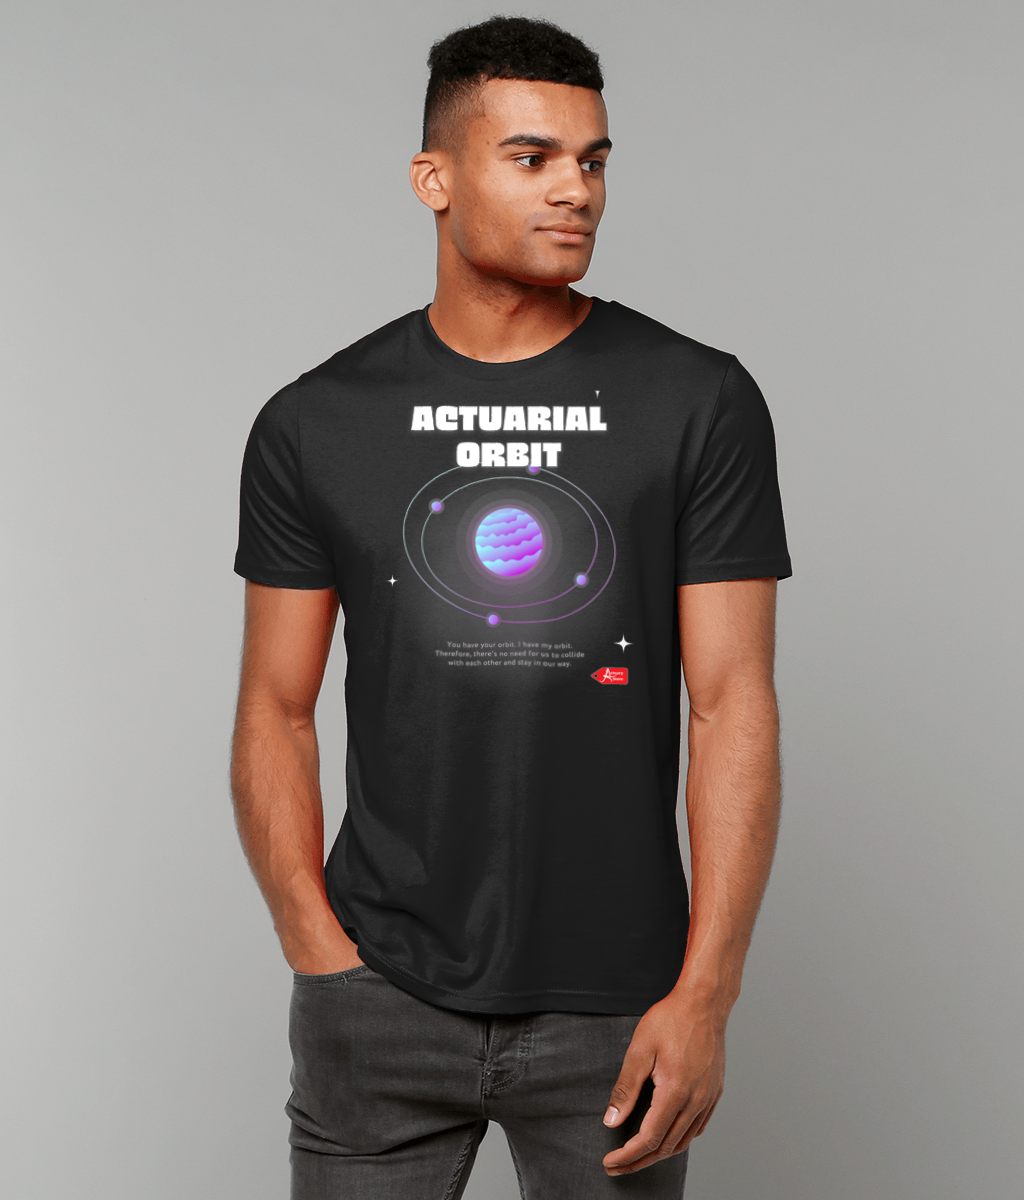 Actuarial Orbit Quote Black T-Shirt